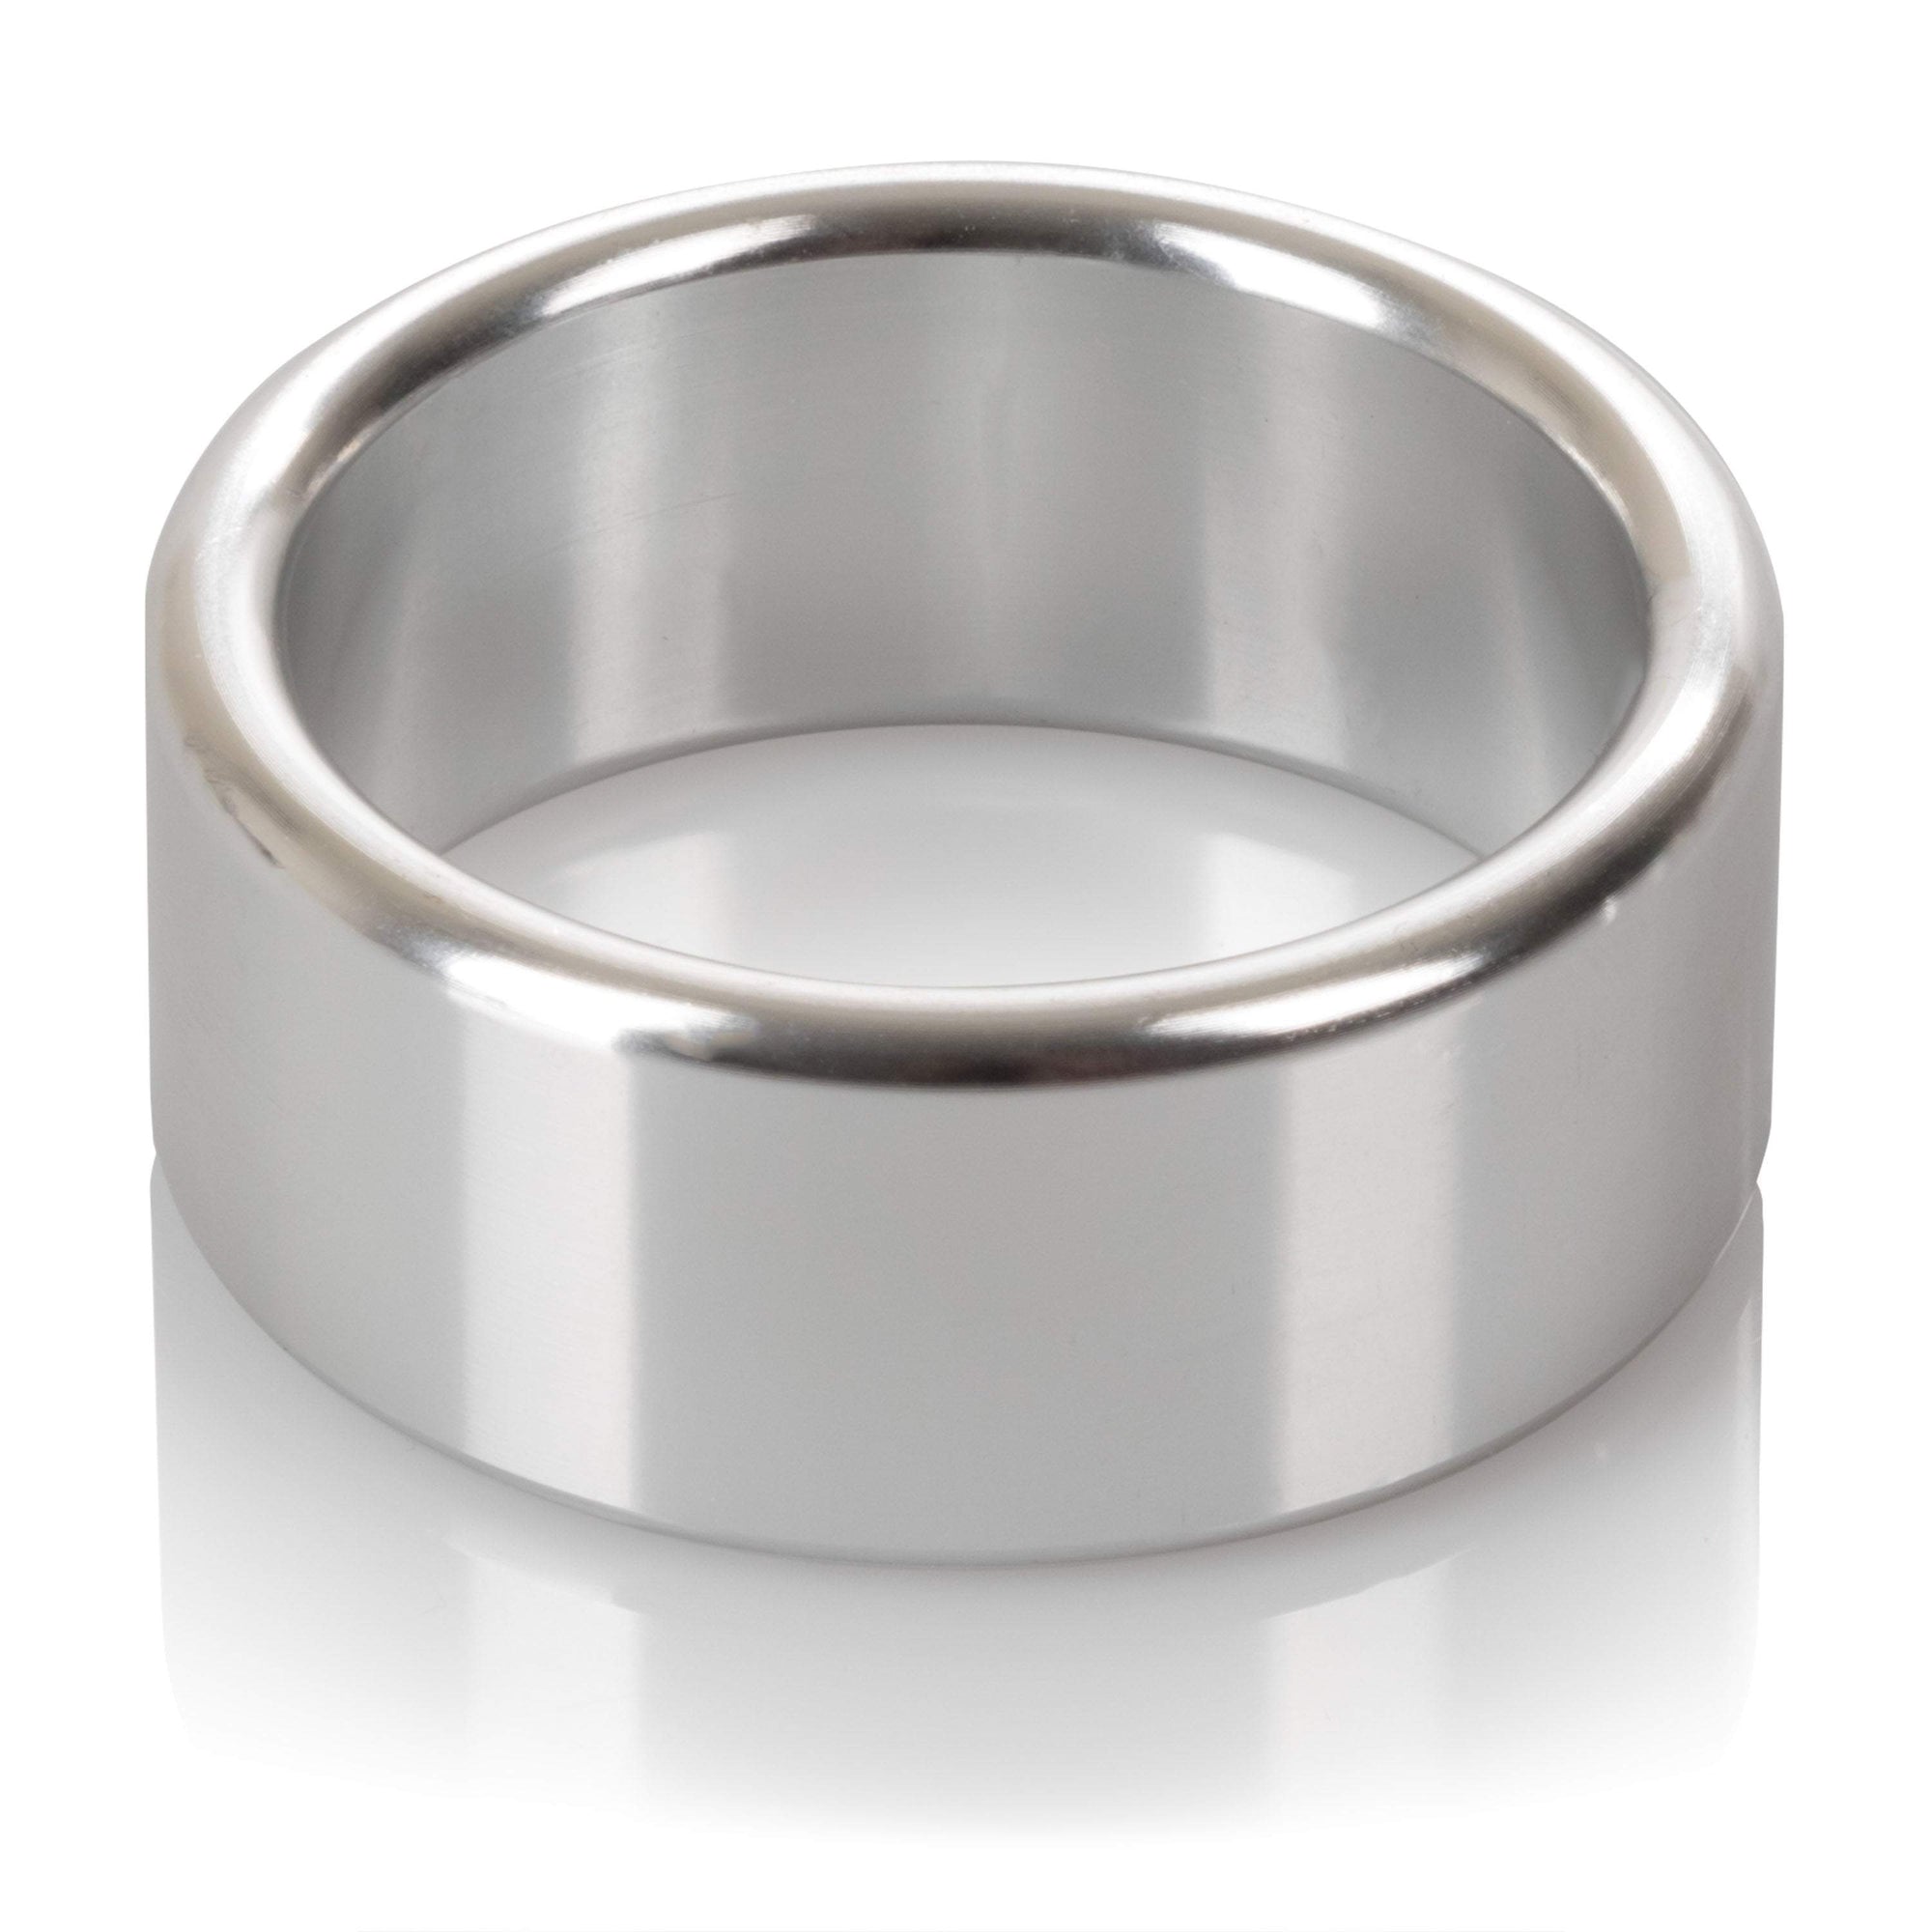 California Exotics - Alloy Metallic Cock Ring Medium (Silver) Metal Cock Ring (Non Vibration)